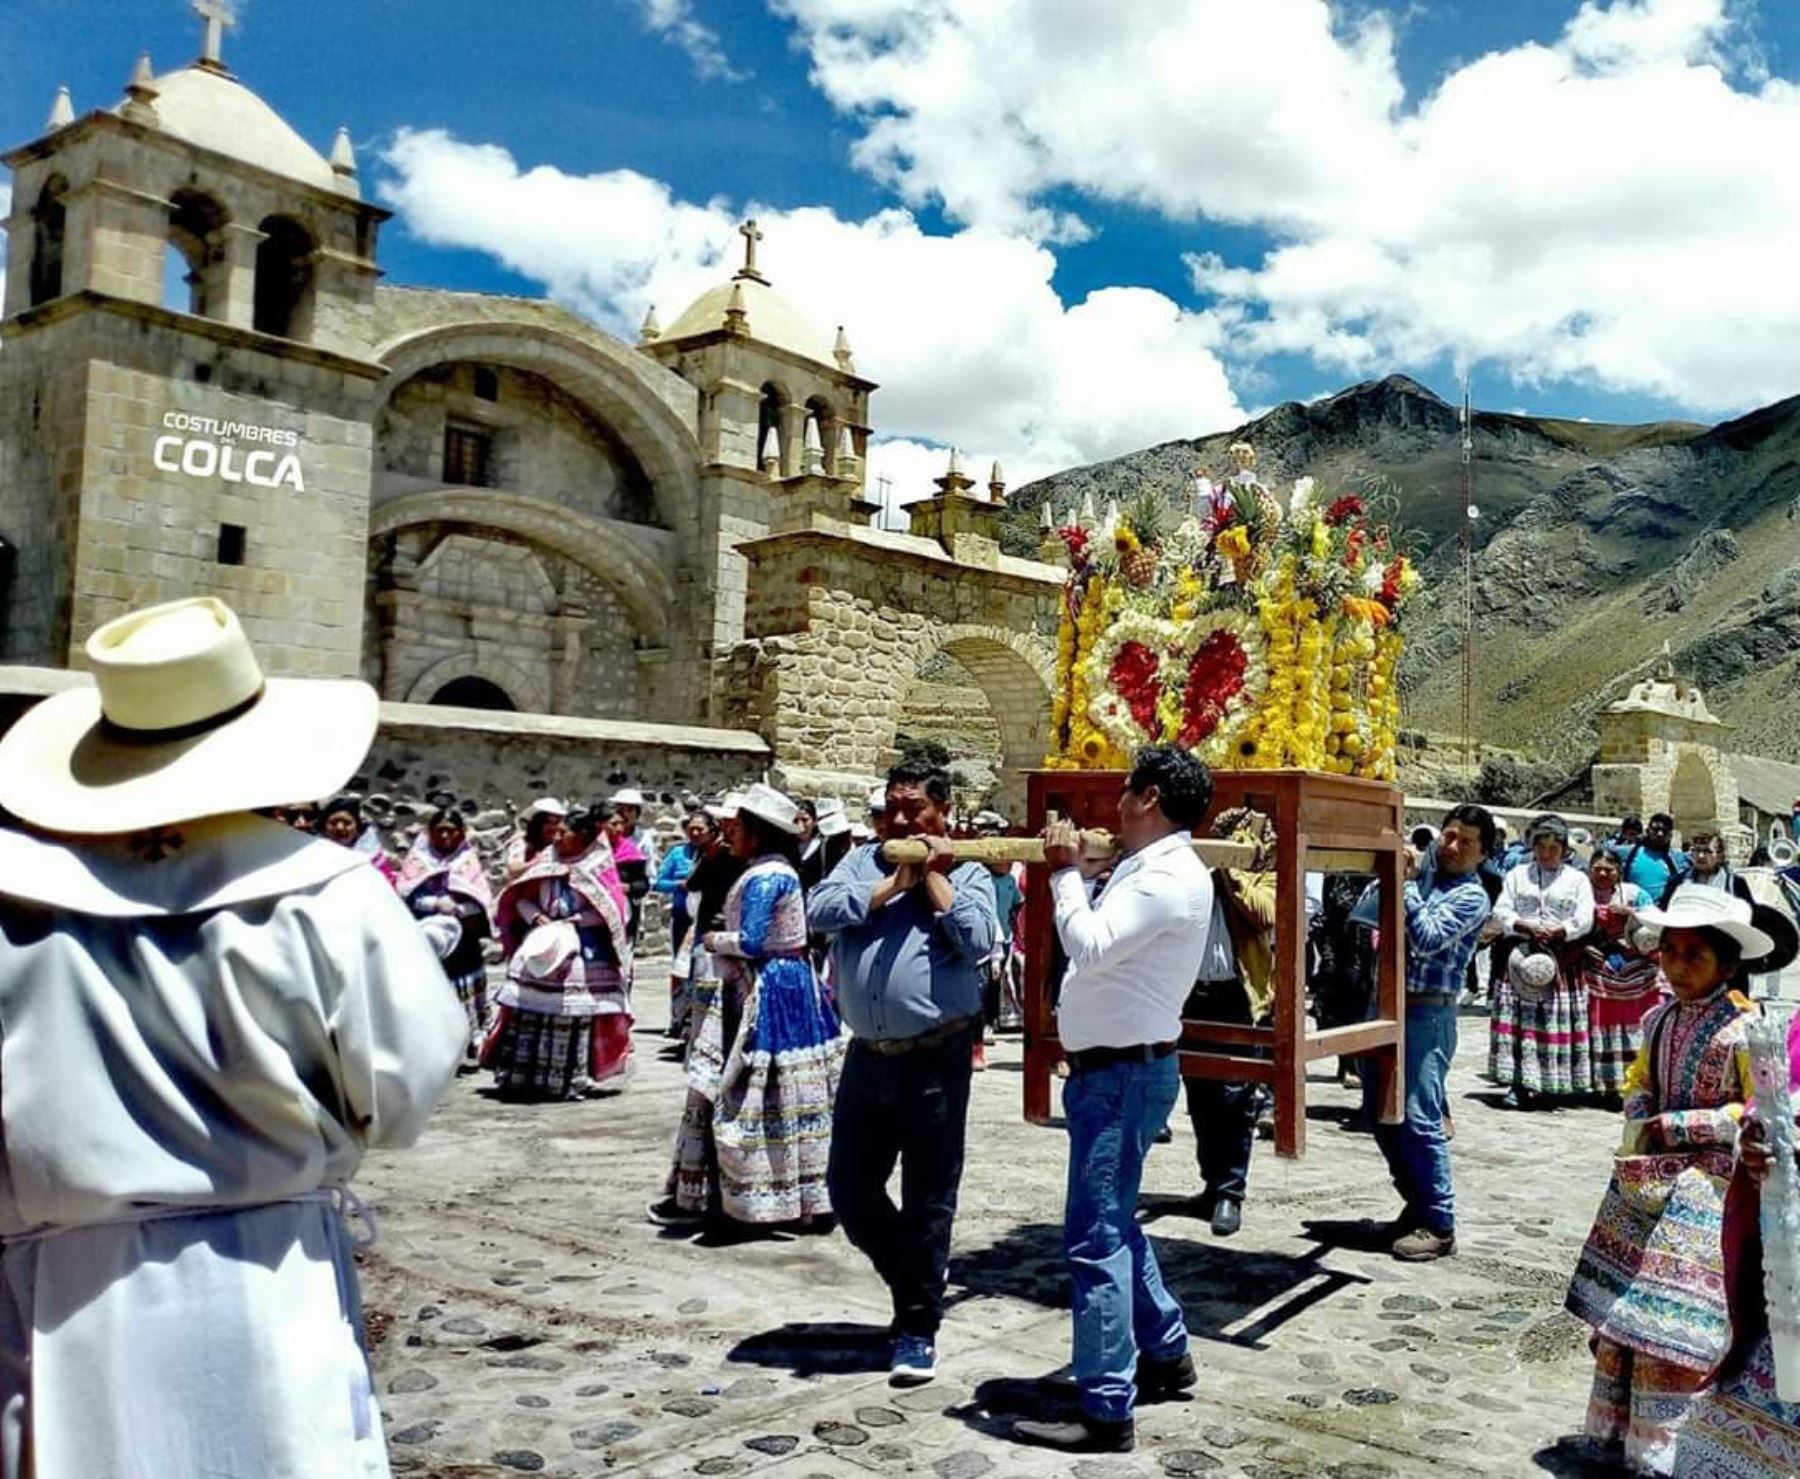 Los pueblos ubicados en el valle del Colca, en la sierra de Arequipa, esperan recibir a más de 5,000 turistas durante el feriado largo por Semana Santa. Foto: Autocolca